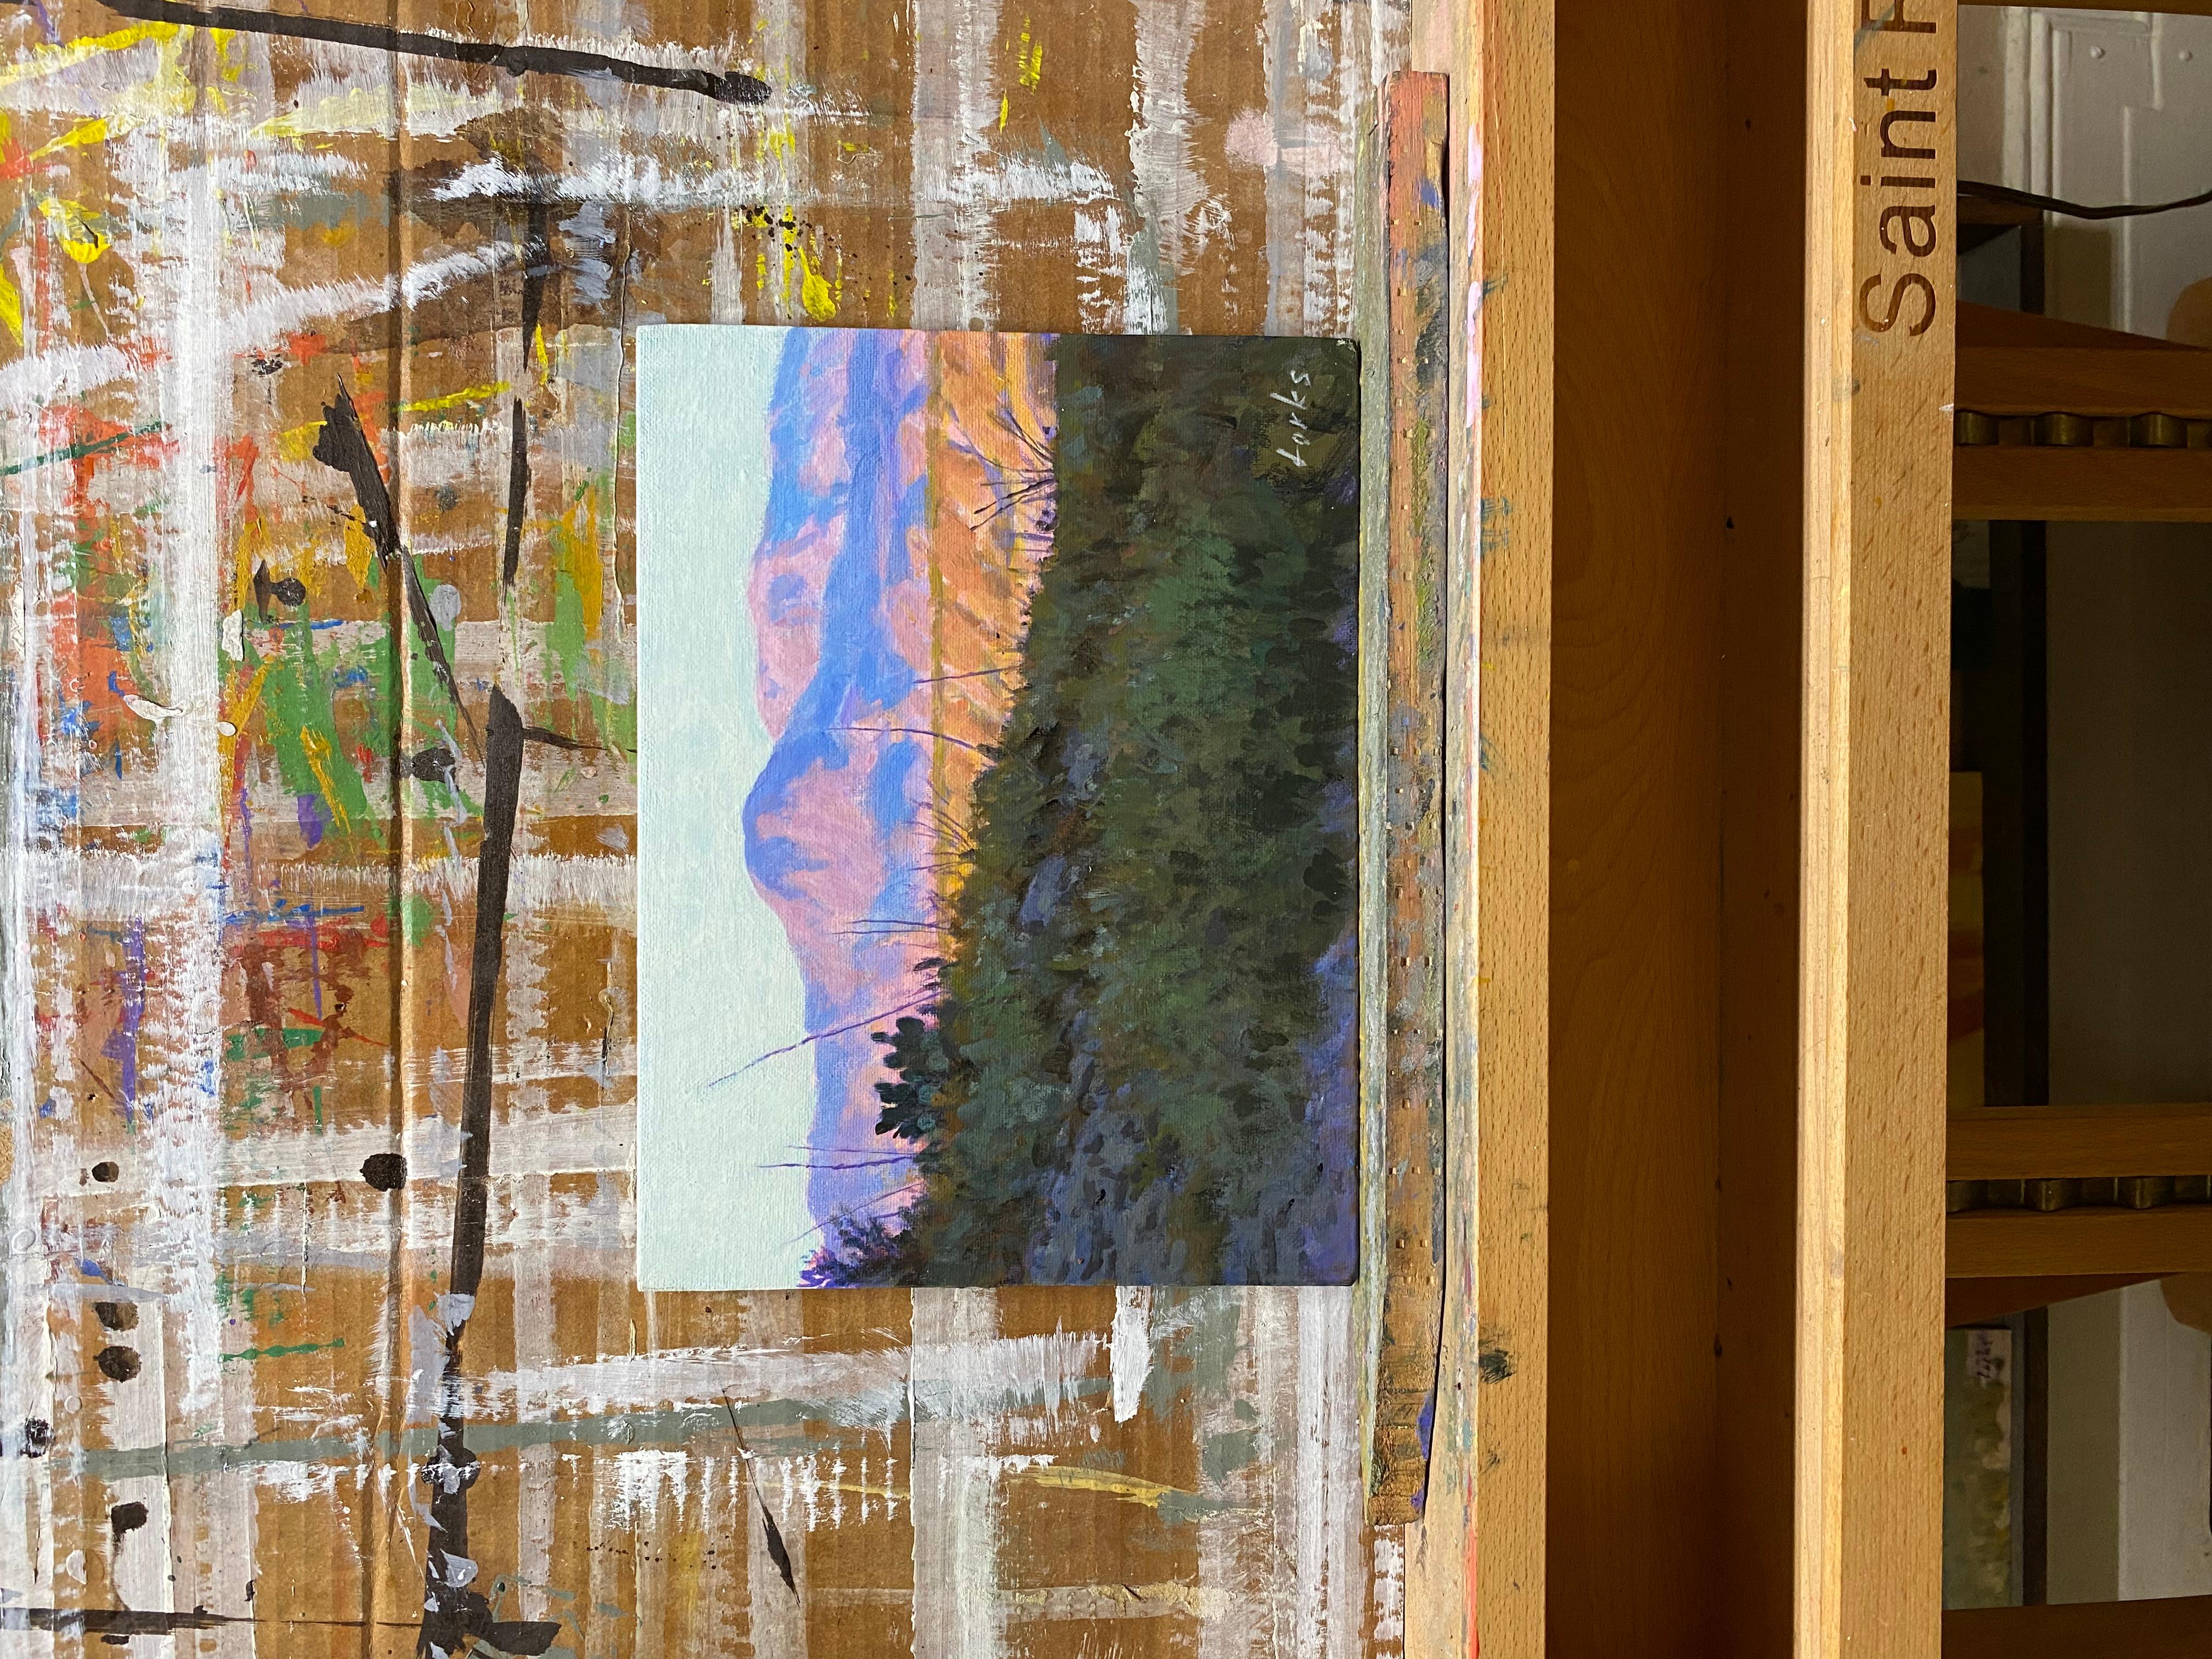 <p>Kommentare des Künstlers<br />Das späte Nachmittagslicht beleuchtet die Wüstenlandschaft des Big Bend National Park. Der Hang im Vordergrund liegt im Schatten und lenkt den Blick auf einen entfernten Berg, der in warmen Violett- und Gelbtönen